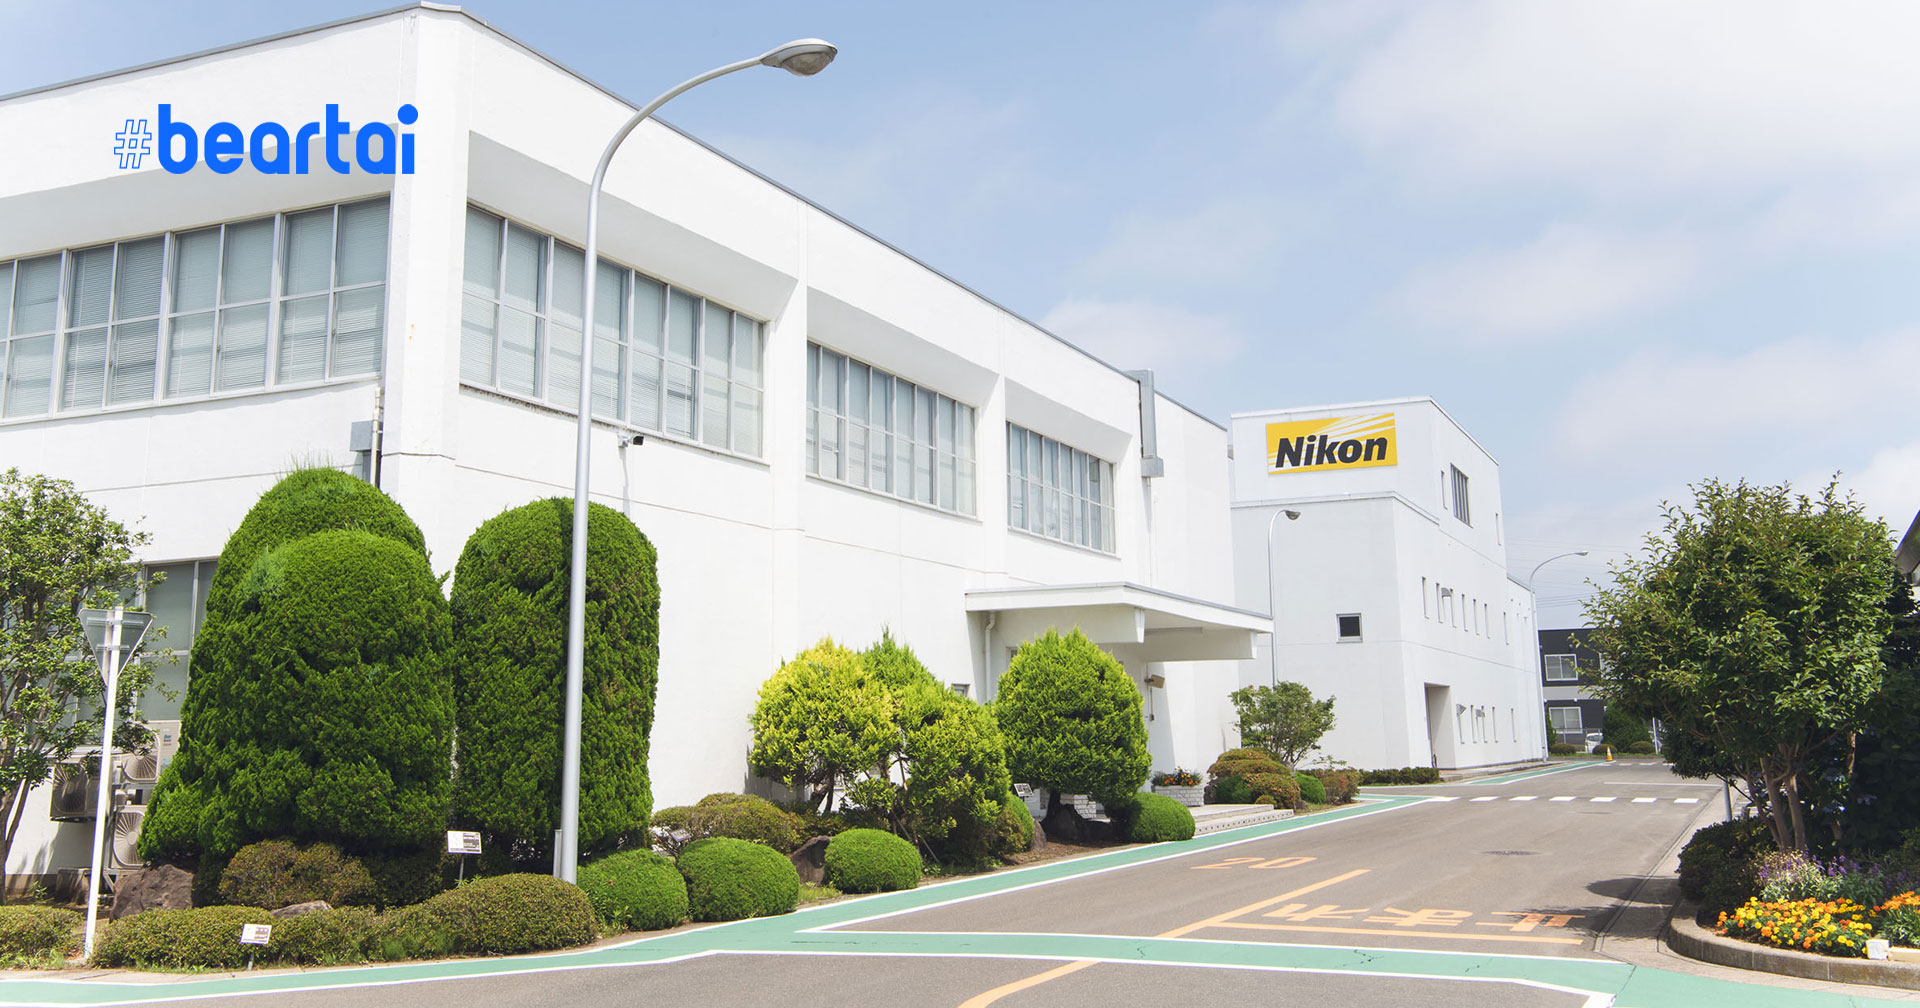 Nikon เตรียมย้ายฐานการผลิตกล้องทั้งหมดมายังประเทศไทย ภายในปี 2021 ที่จะถึงนี้